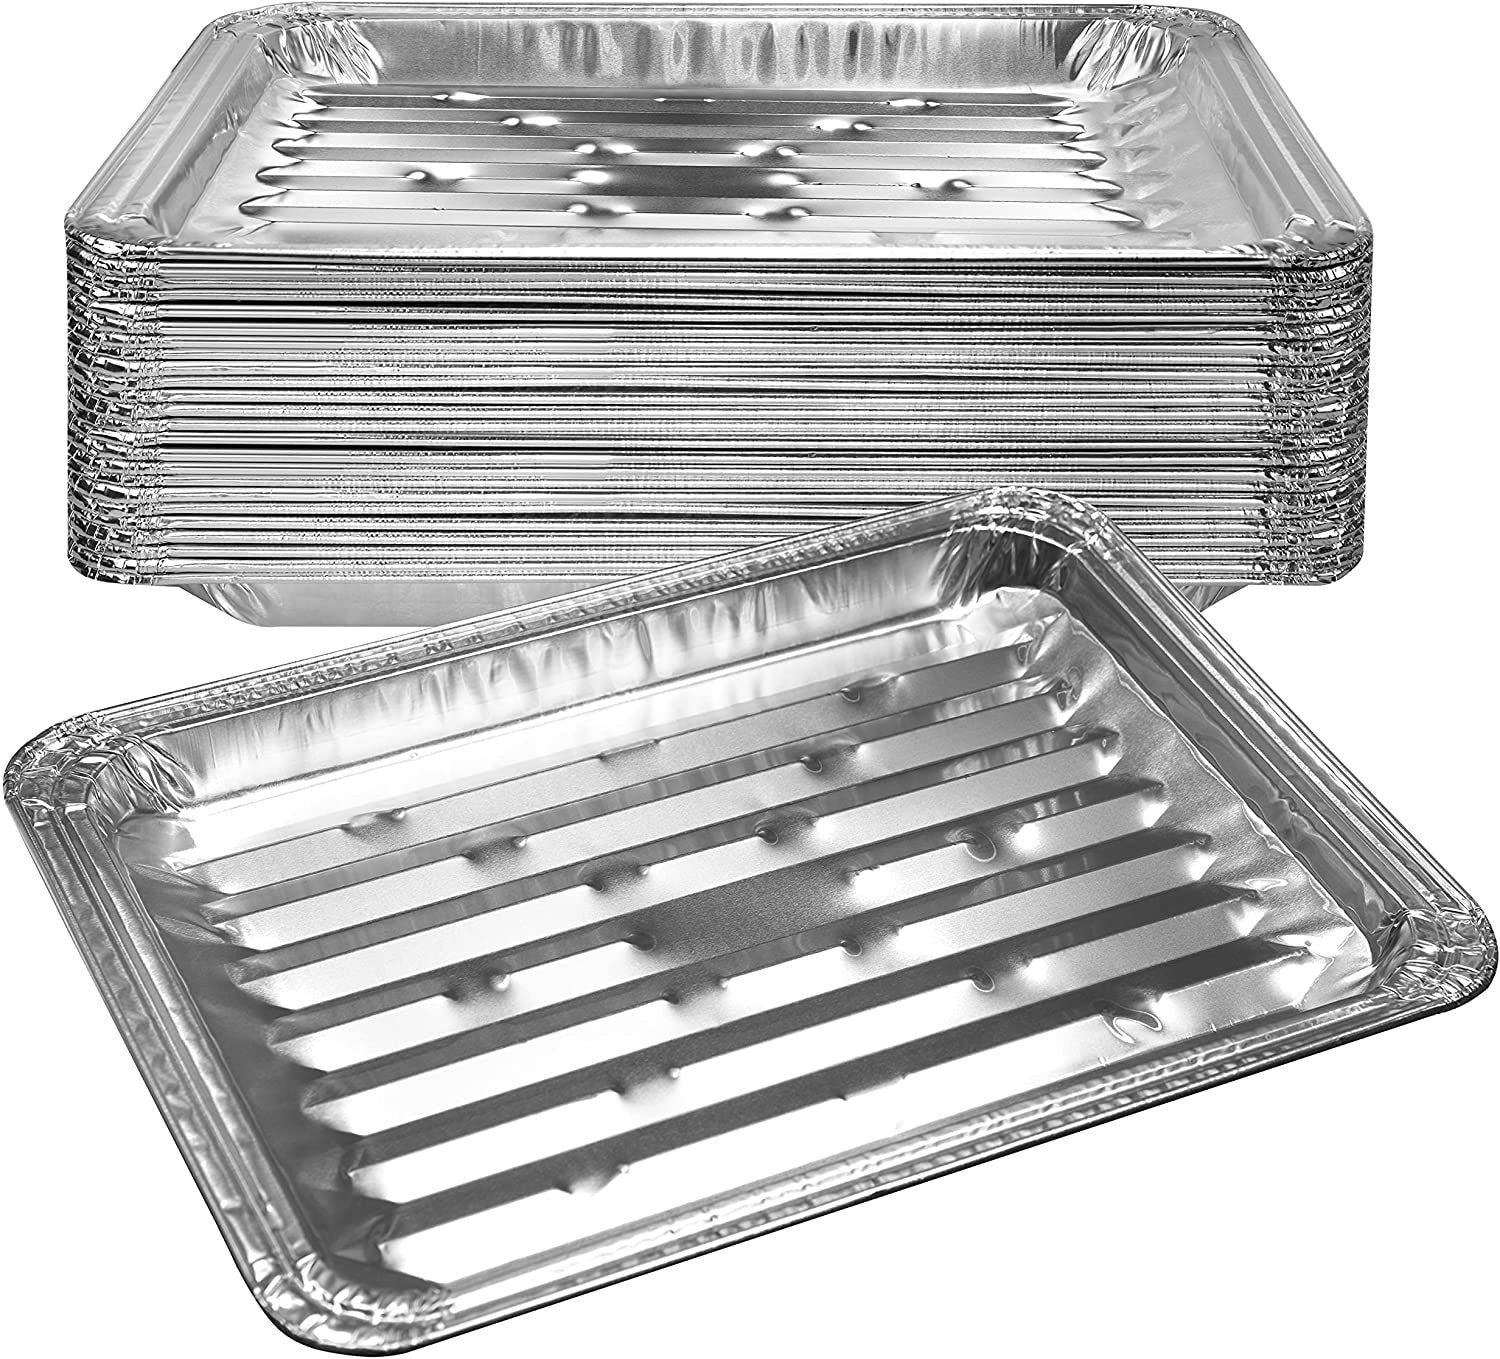 NYHI 9 x 13 Aluminum Foil Pans With Lids 10 Pack Durable